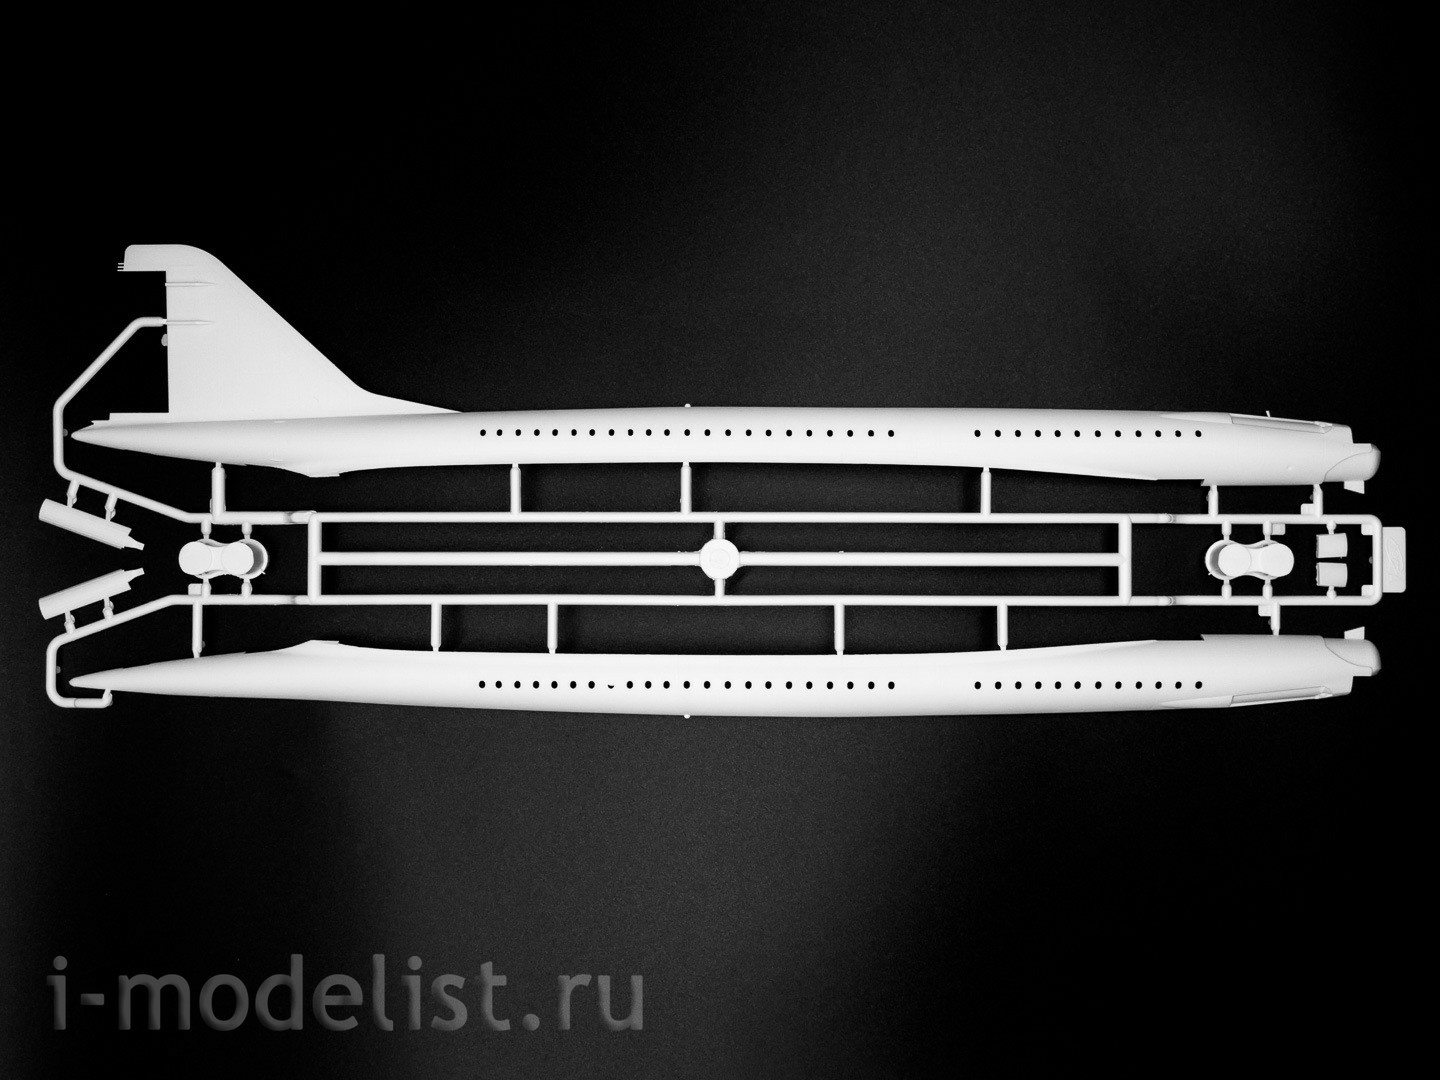 14401 ICM 1/144 Советский сверхзвуковой пассажирский самолет Tupolev-144